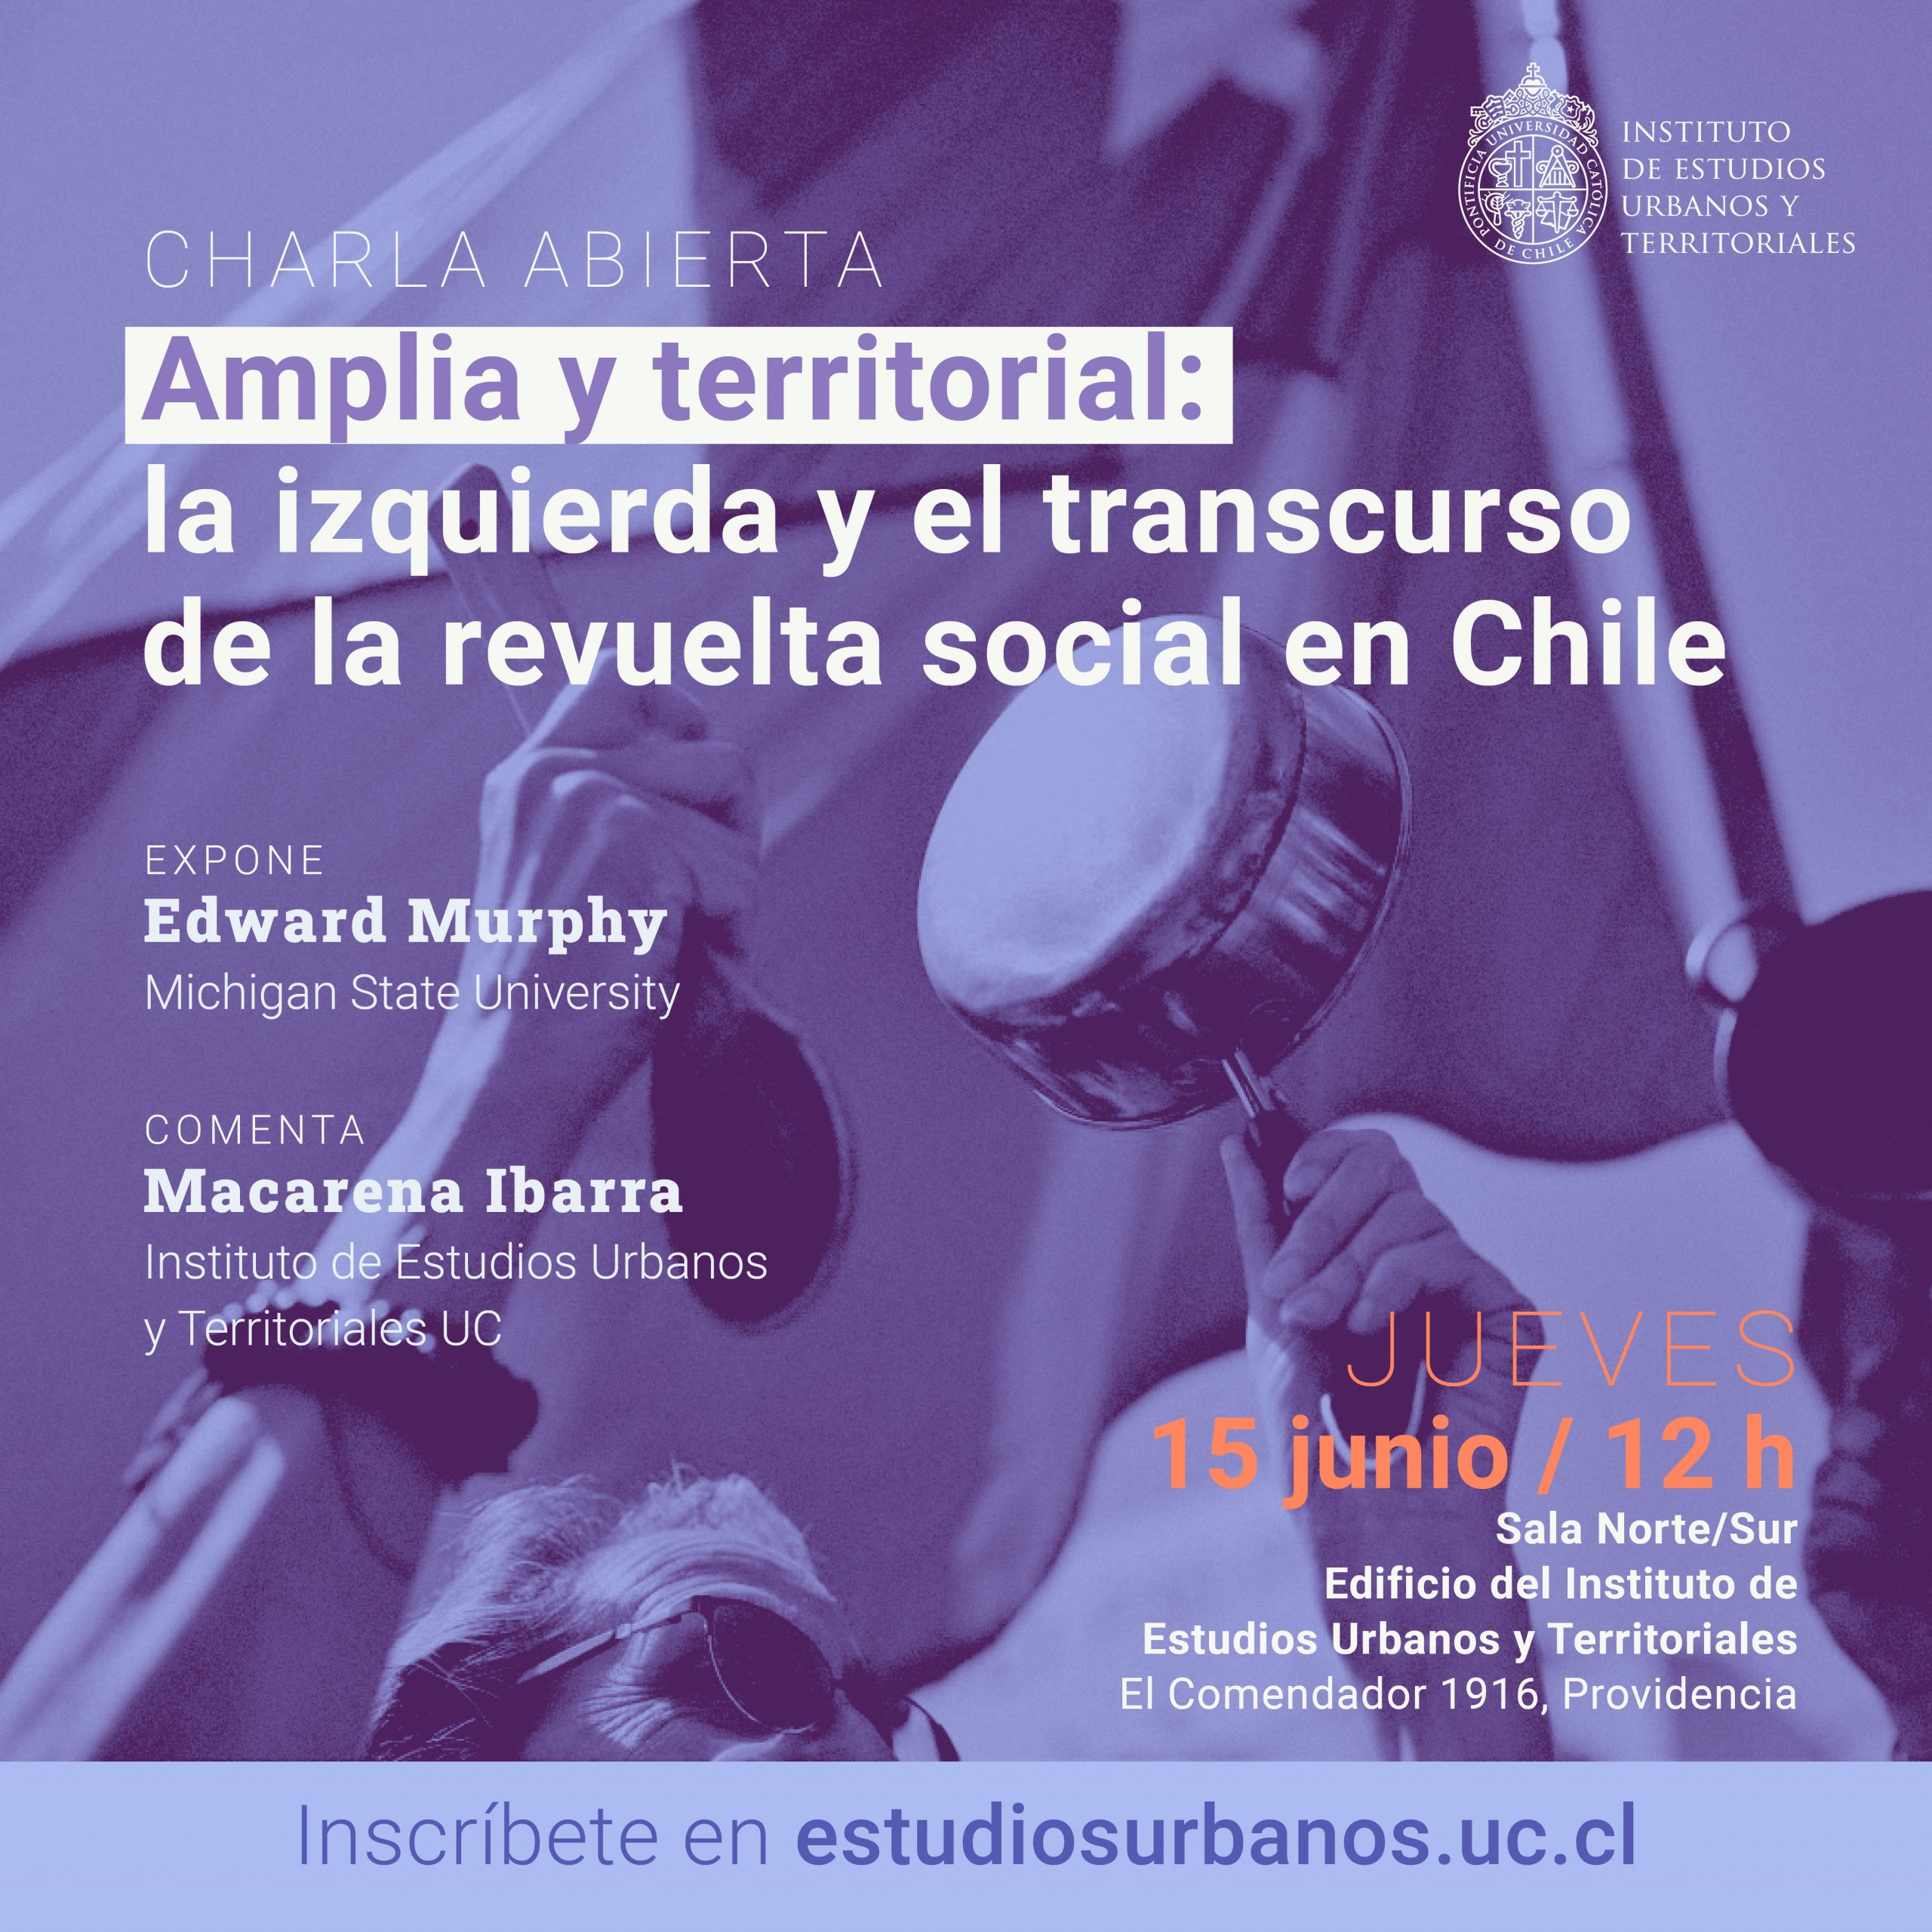 CHARLA ABIERTA | Amplia y territorial:  la izquierda y el transcurso  de la revuelta social en Chile